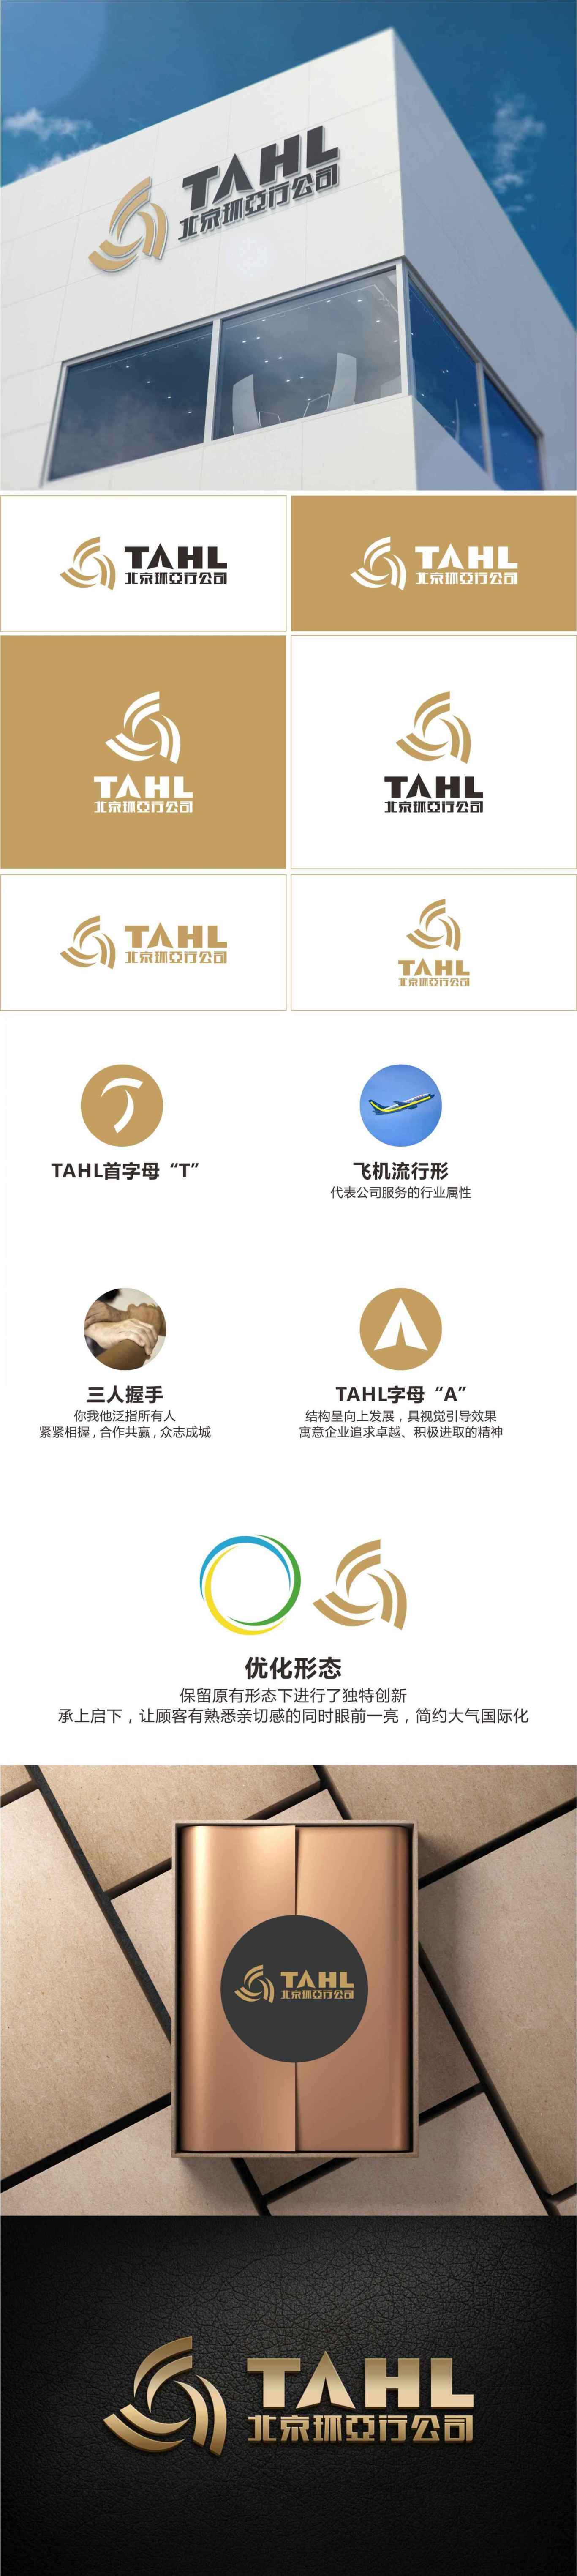 北京环亚行公司logo项目设计图0